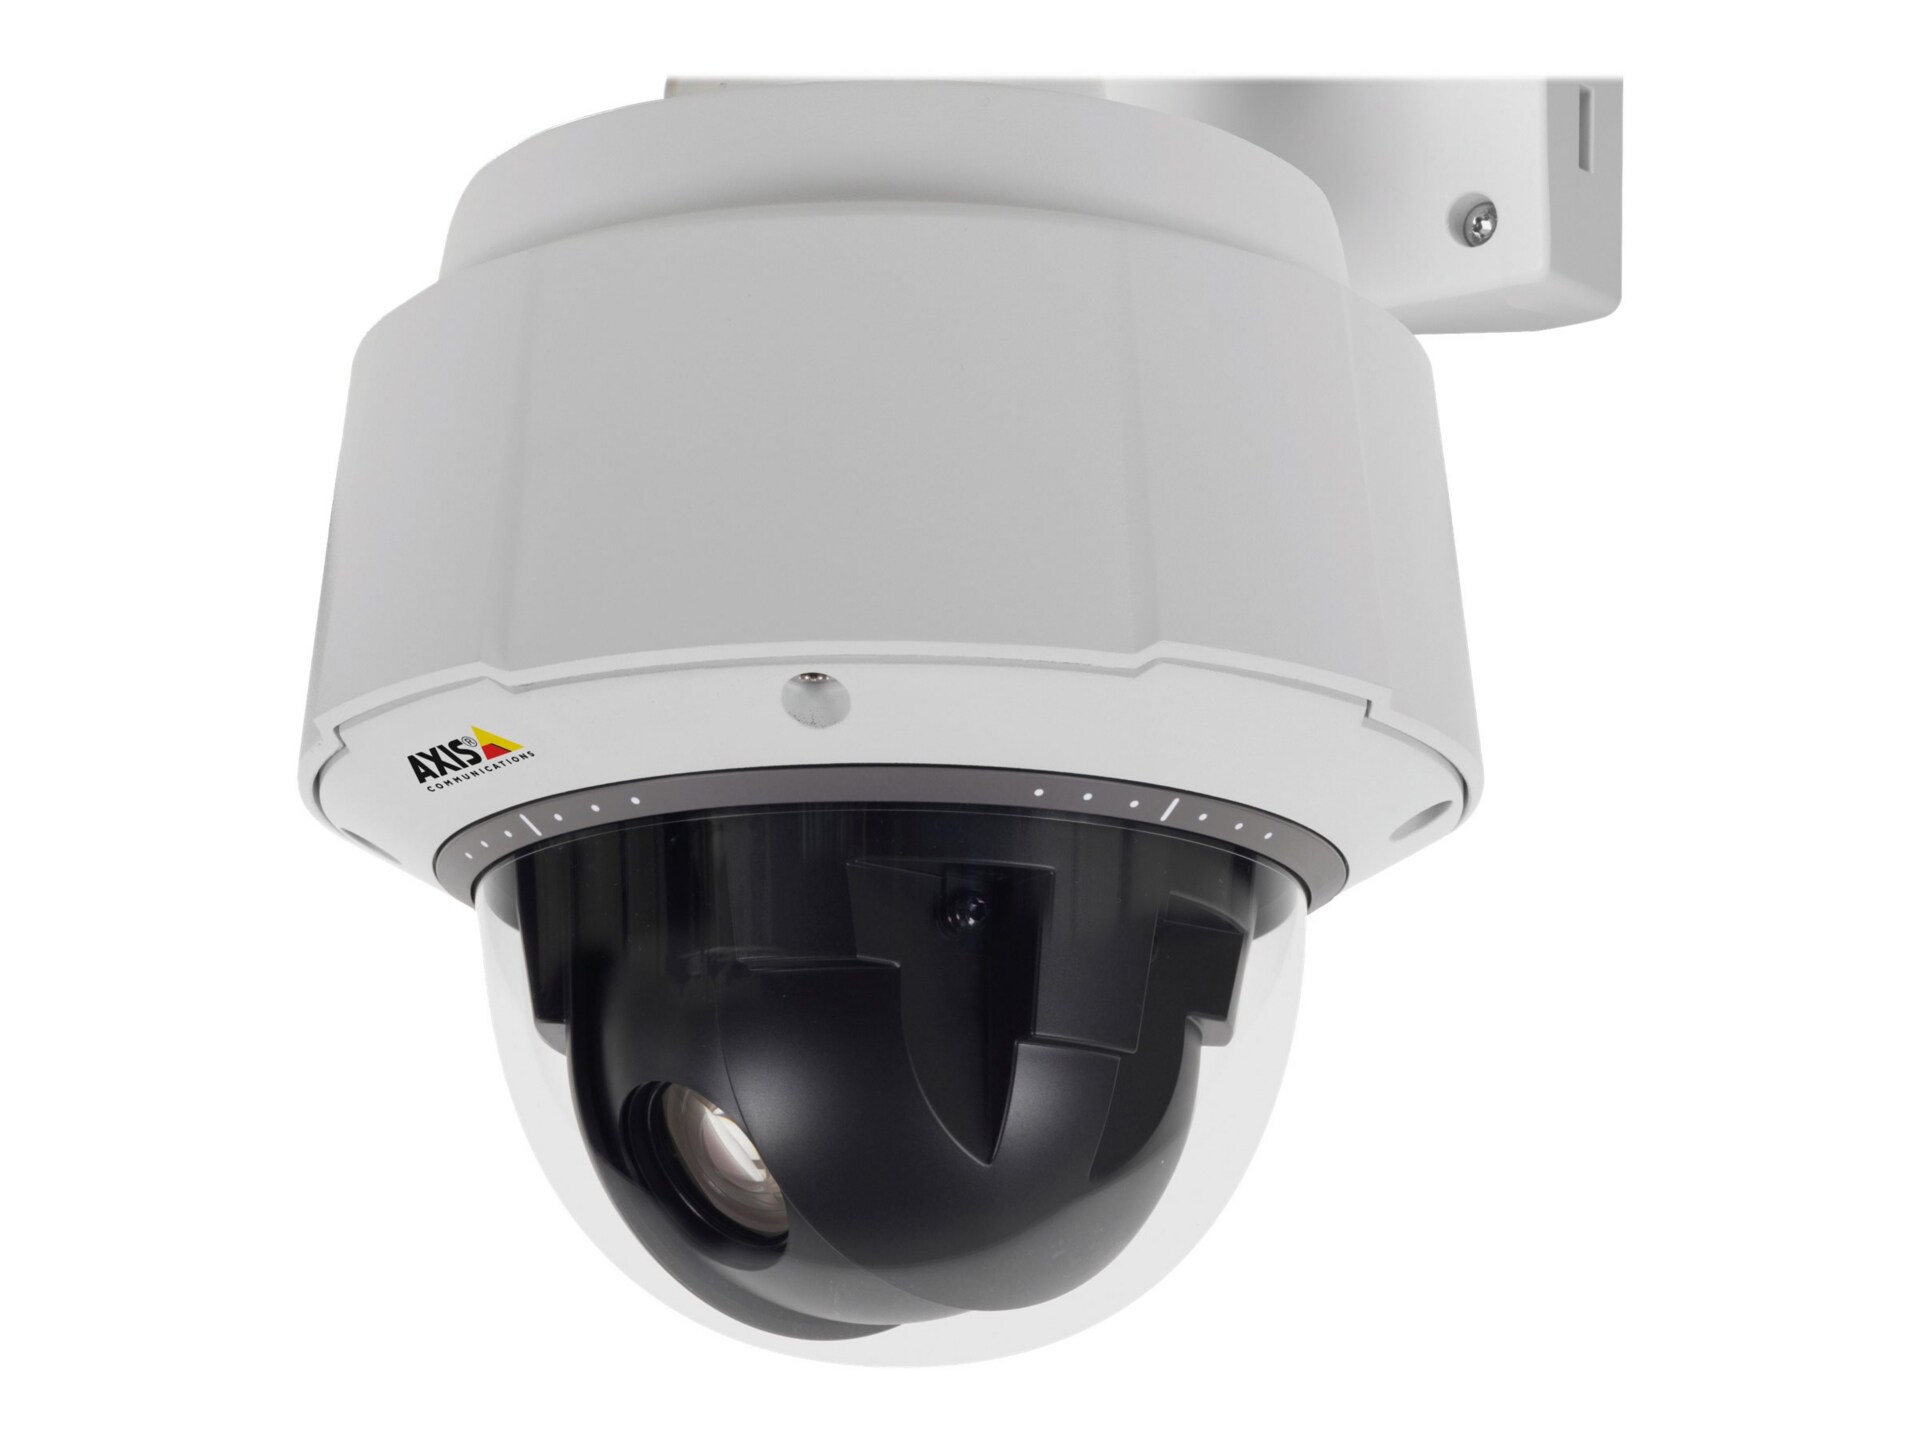 AXIS Q6055-E PTZ Dome Network Camera 60Hz - network surveillance camera